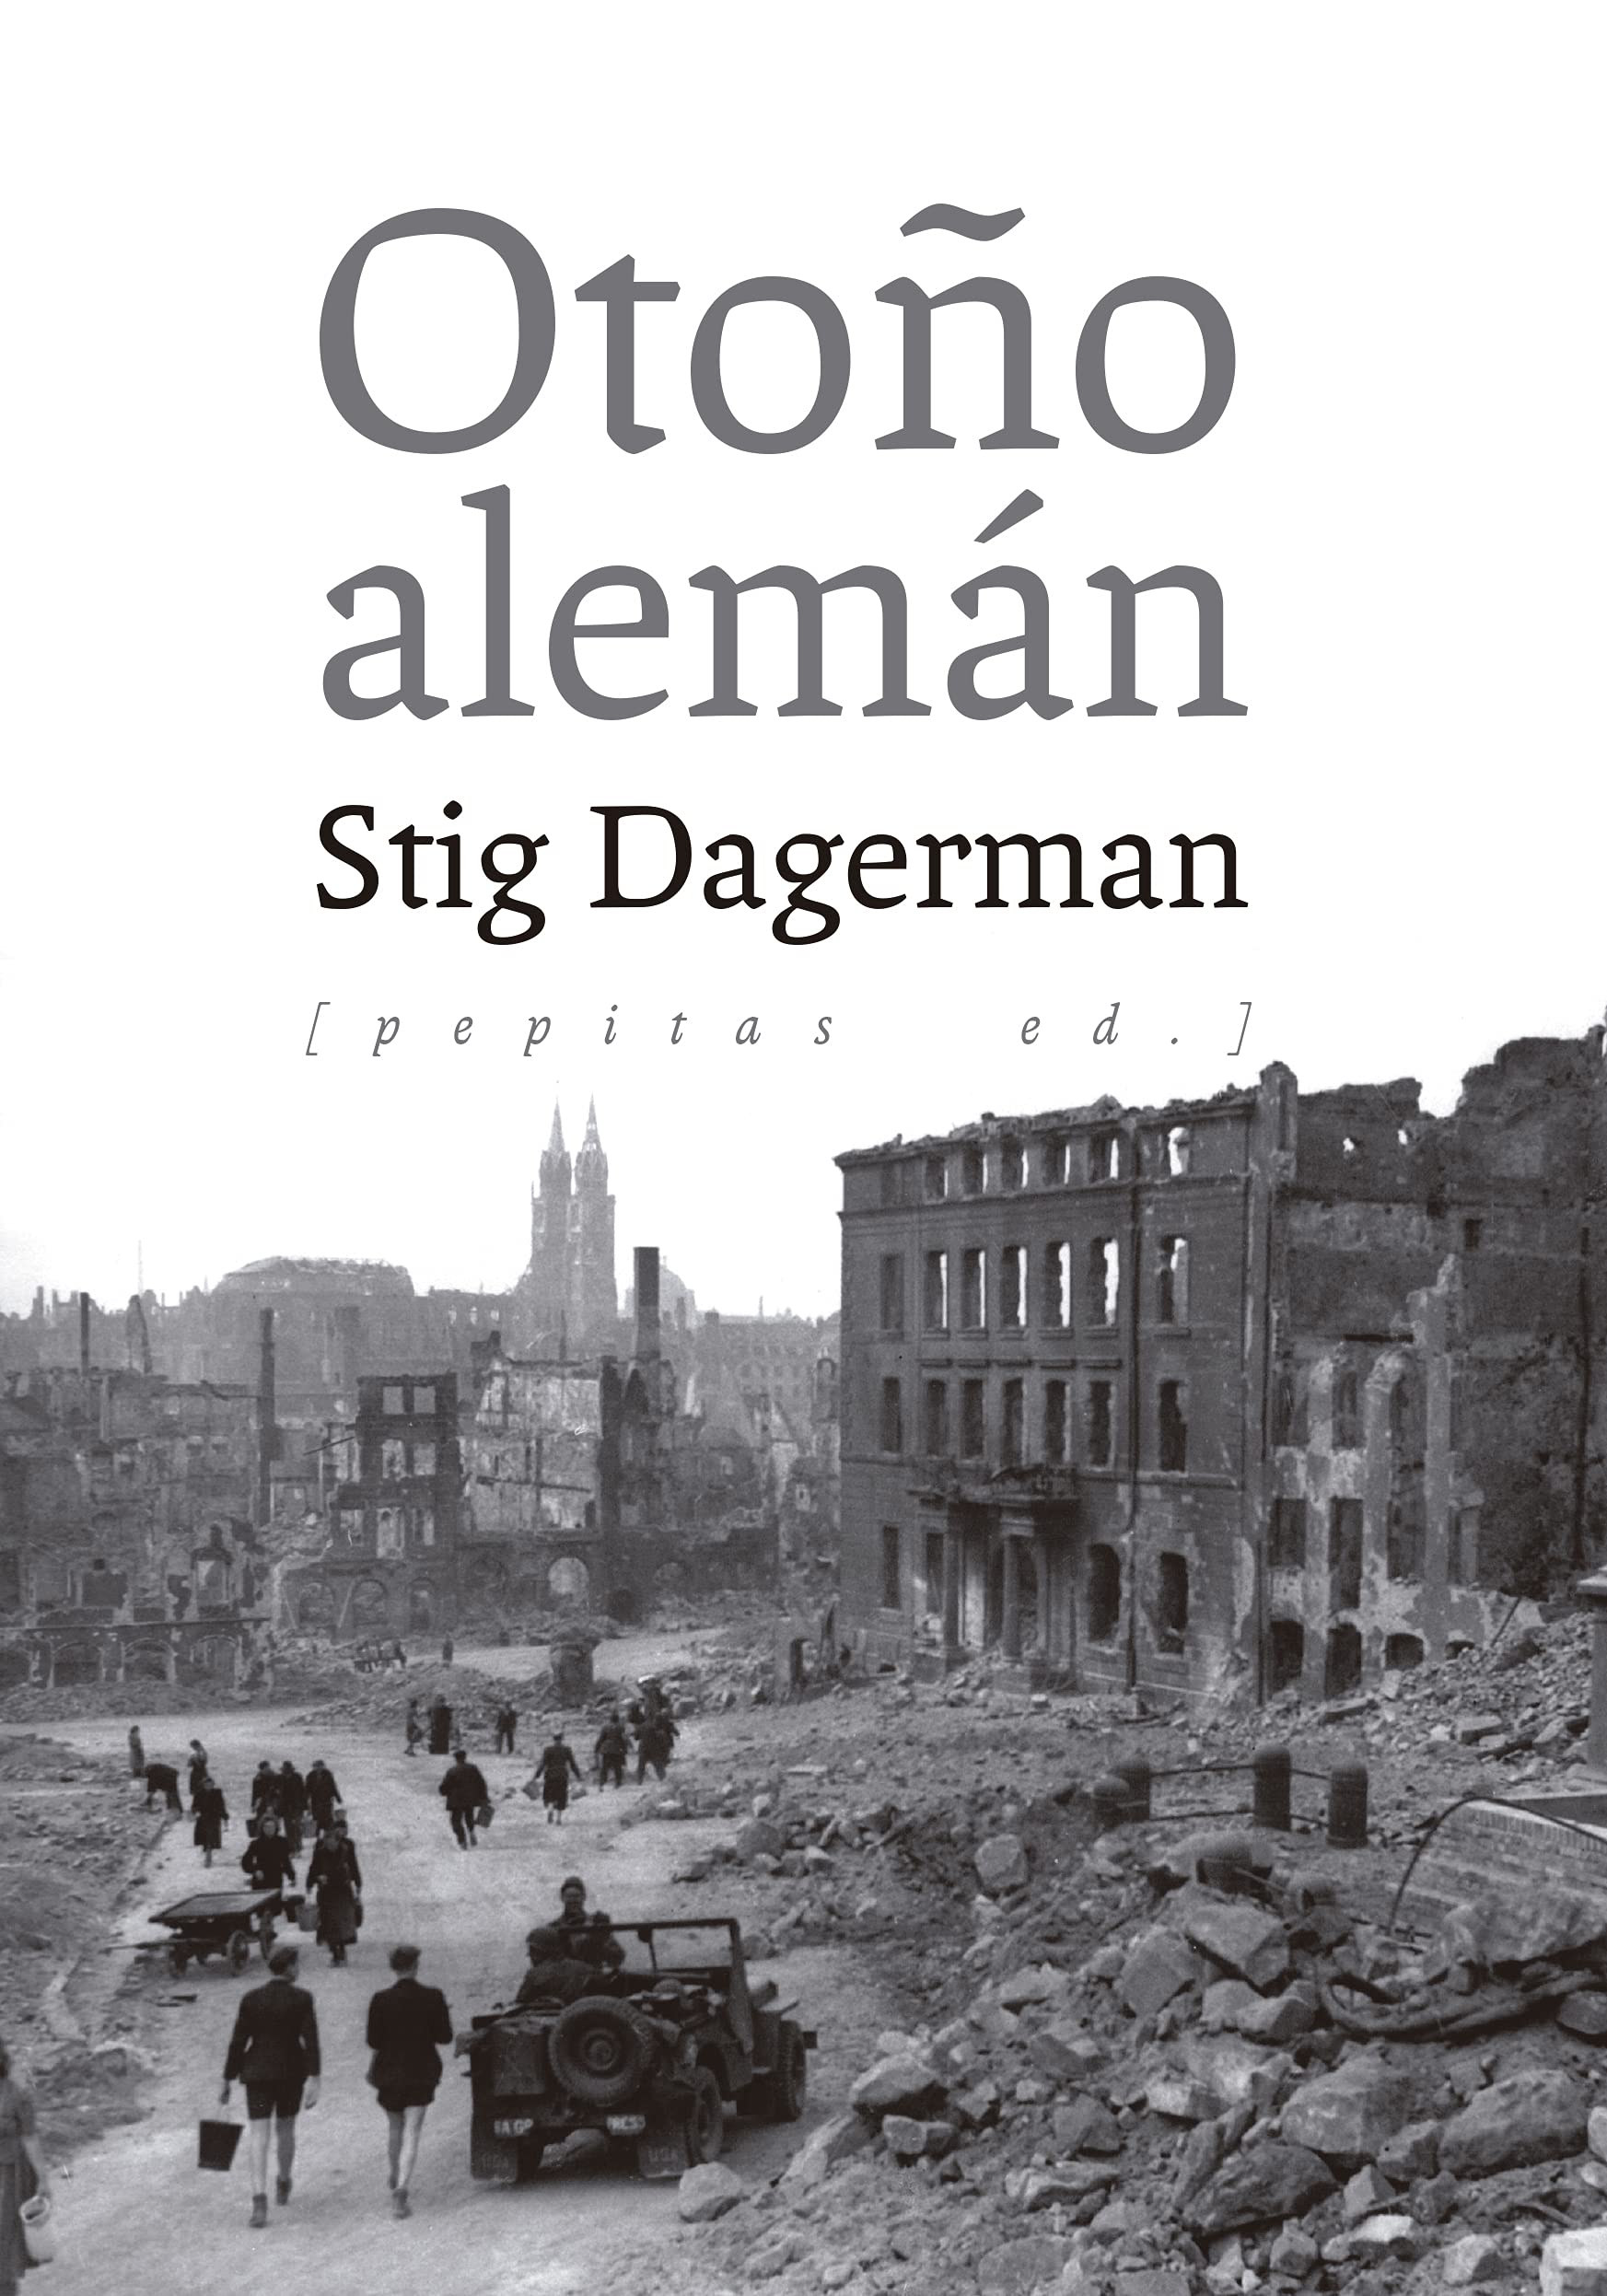 El ‘otoño alemán’ de Stig Dagerman